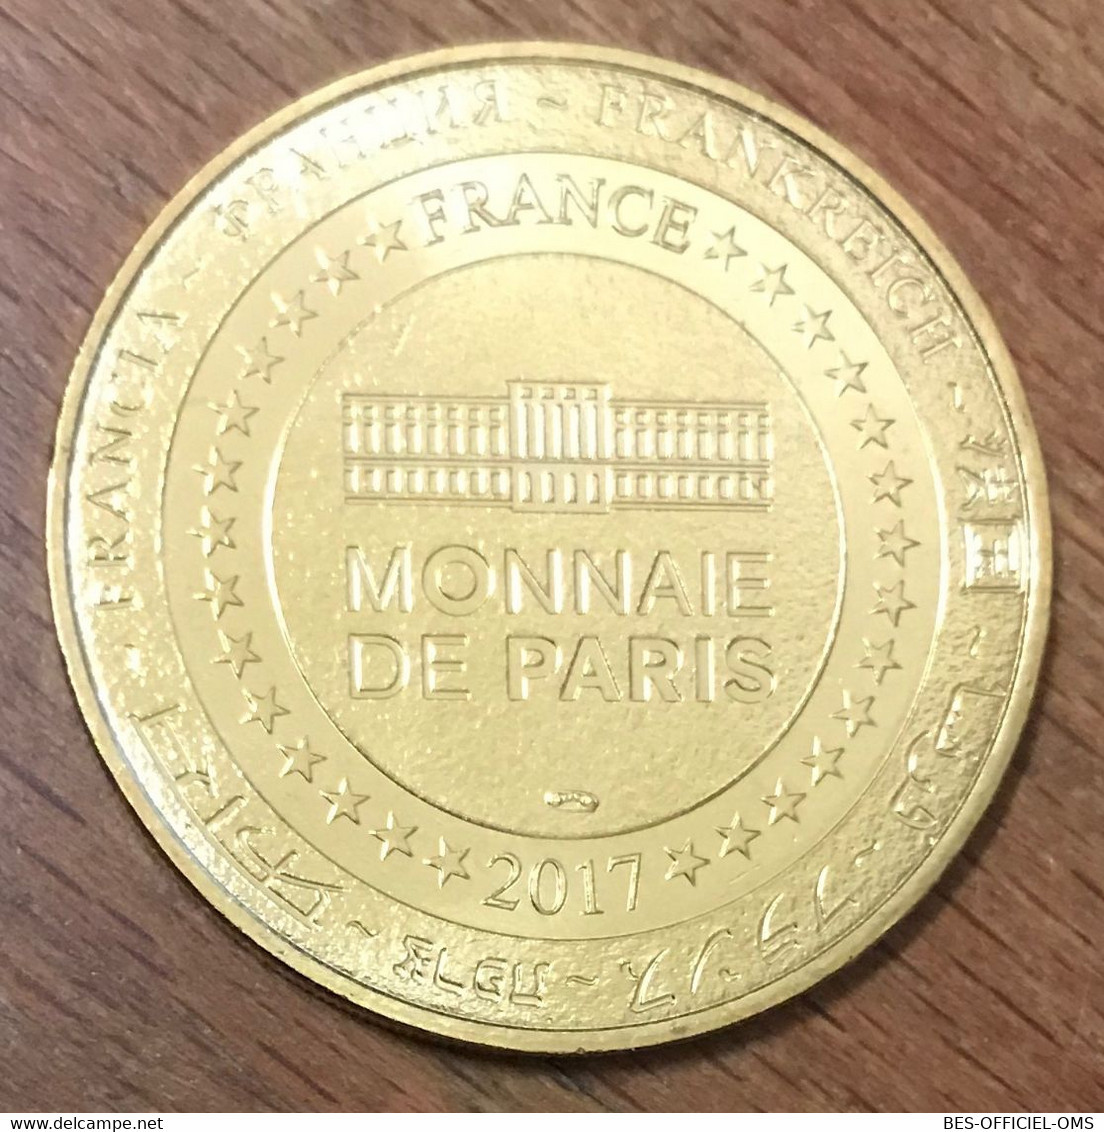 10 ESSOYES MAISON DES RENOIR MDP 2017 MÉDAILLE SOUVENIR MONNAIE DE PARIS JETON TOURISTIQUE MEDALS TOKENS COINS - 2017